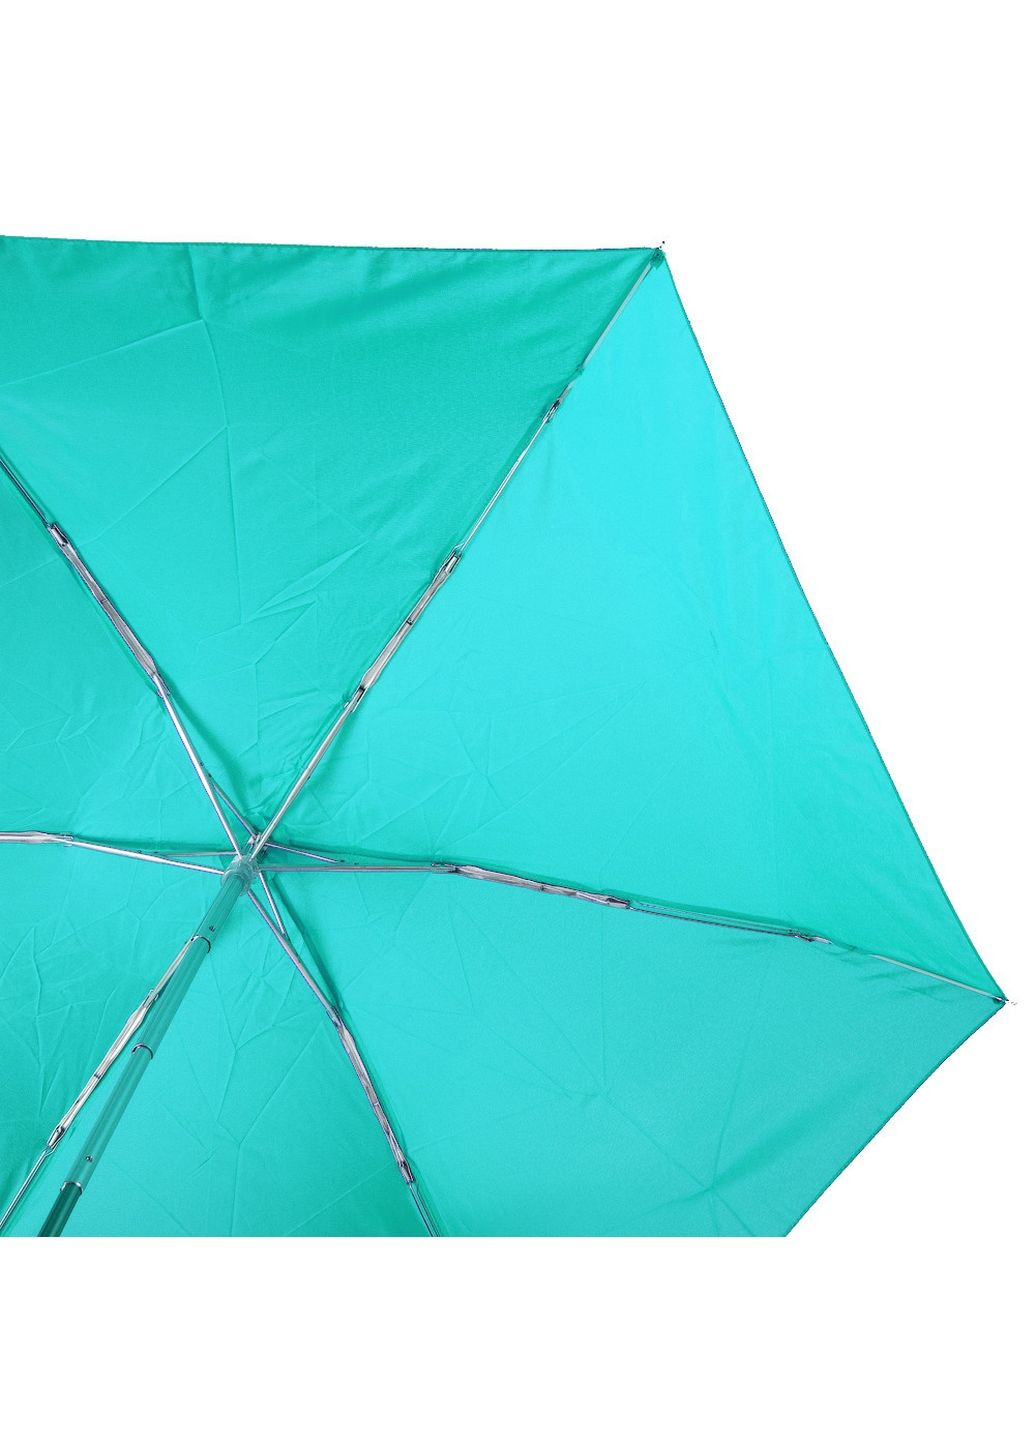 Женский складной зонт механический Art rain (282587315)